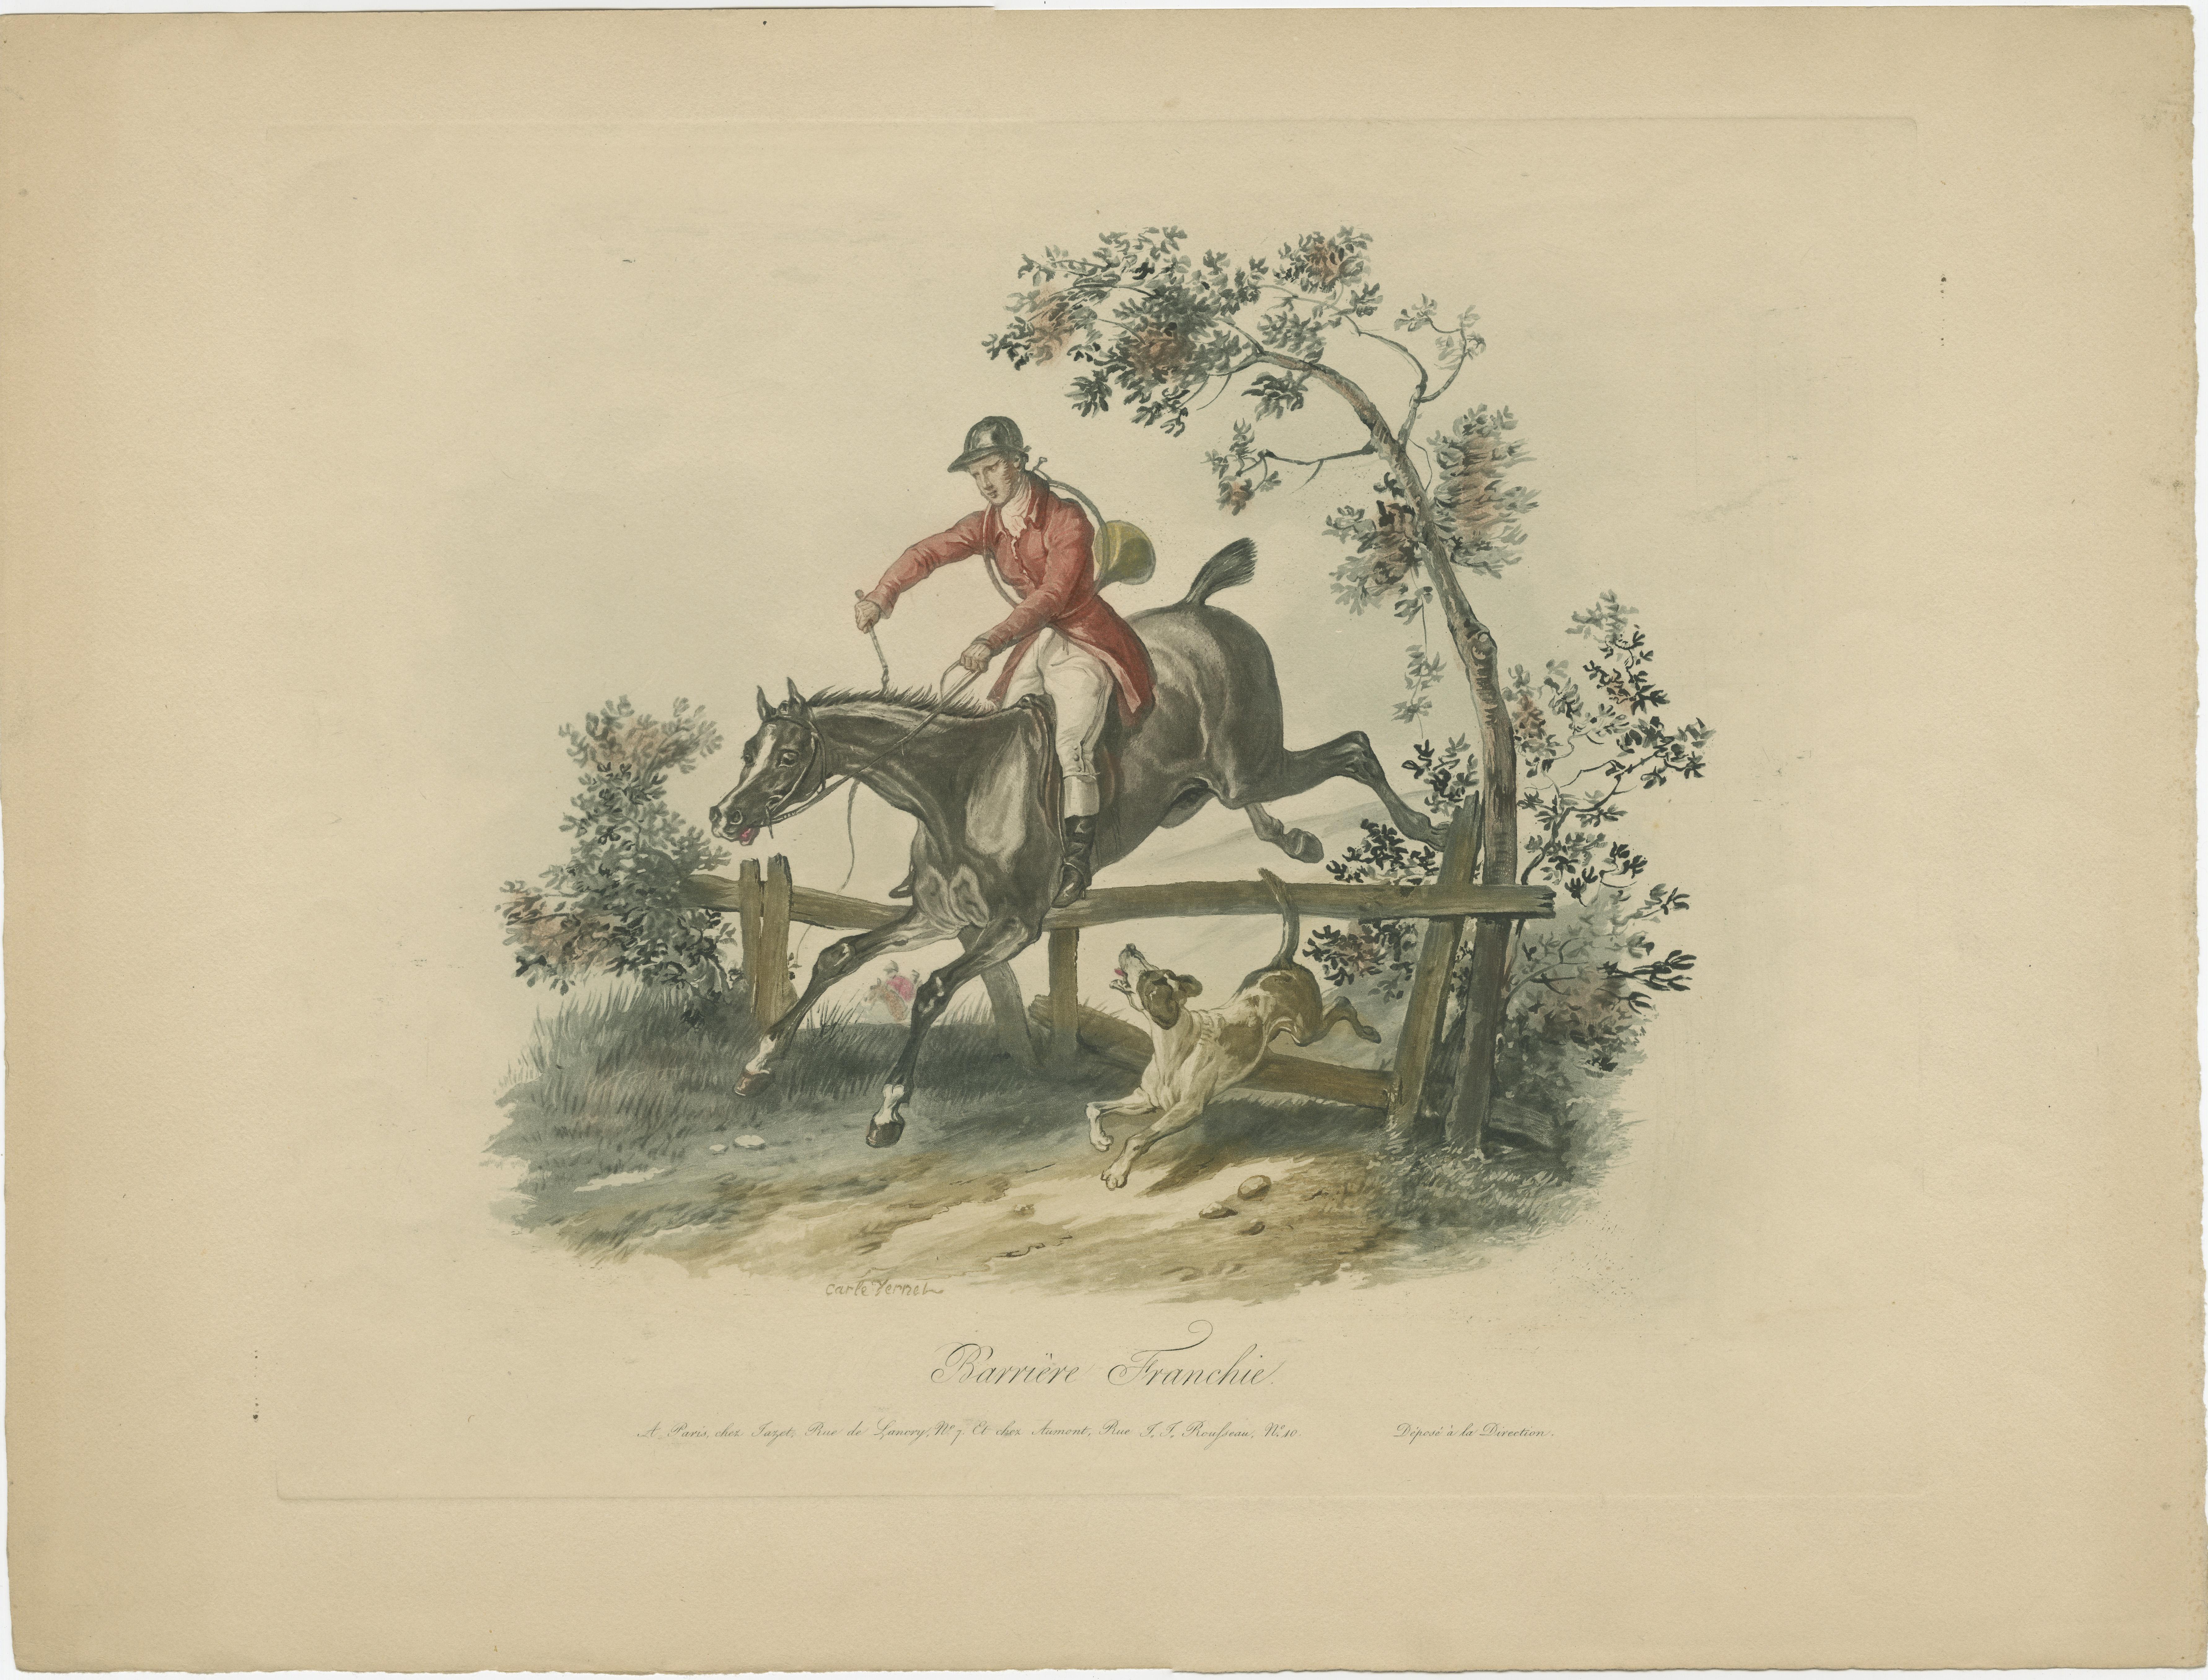 Set of 4 antique horse prints titled 'Cheval perdant la Course', 'Barrière Franchie', 'Cheval gagnant la Course' and 'Le Repos du Chasseur'. Published in Paris by Jazet.